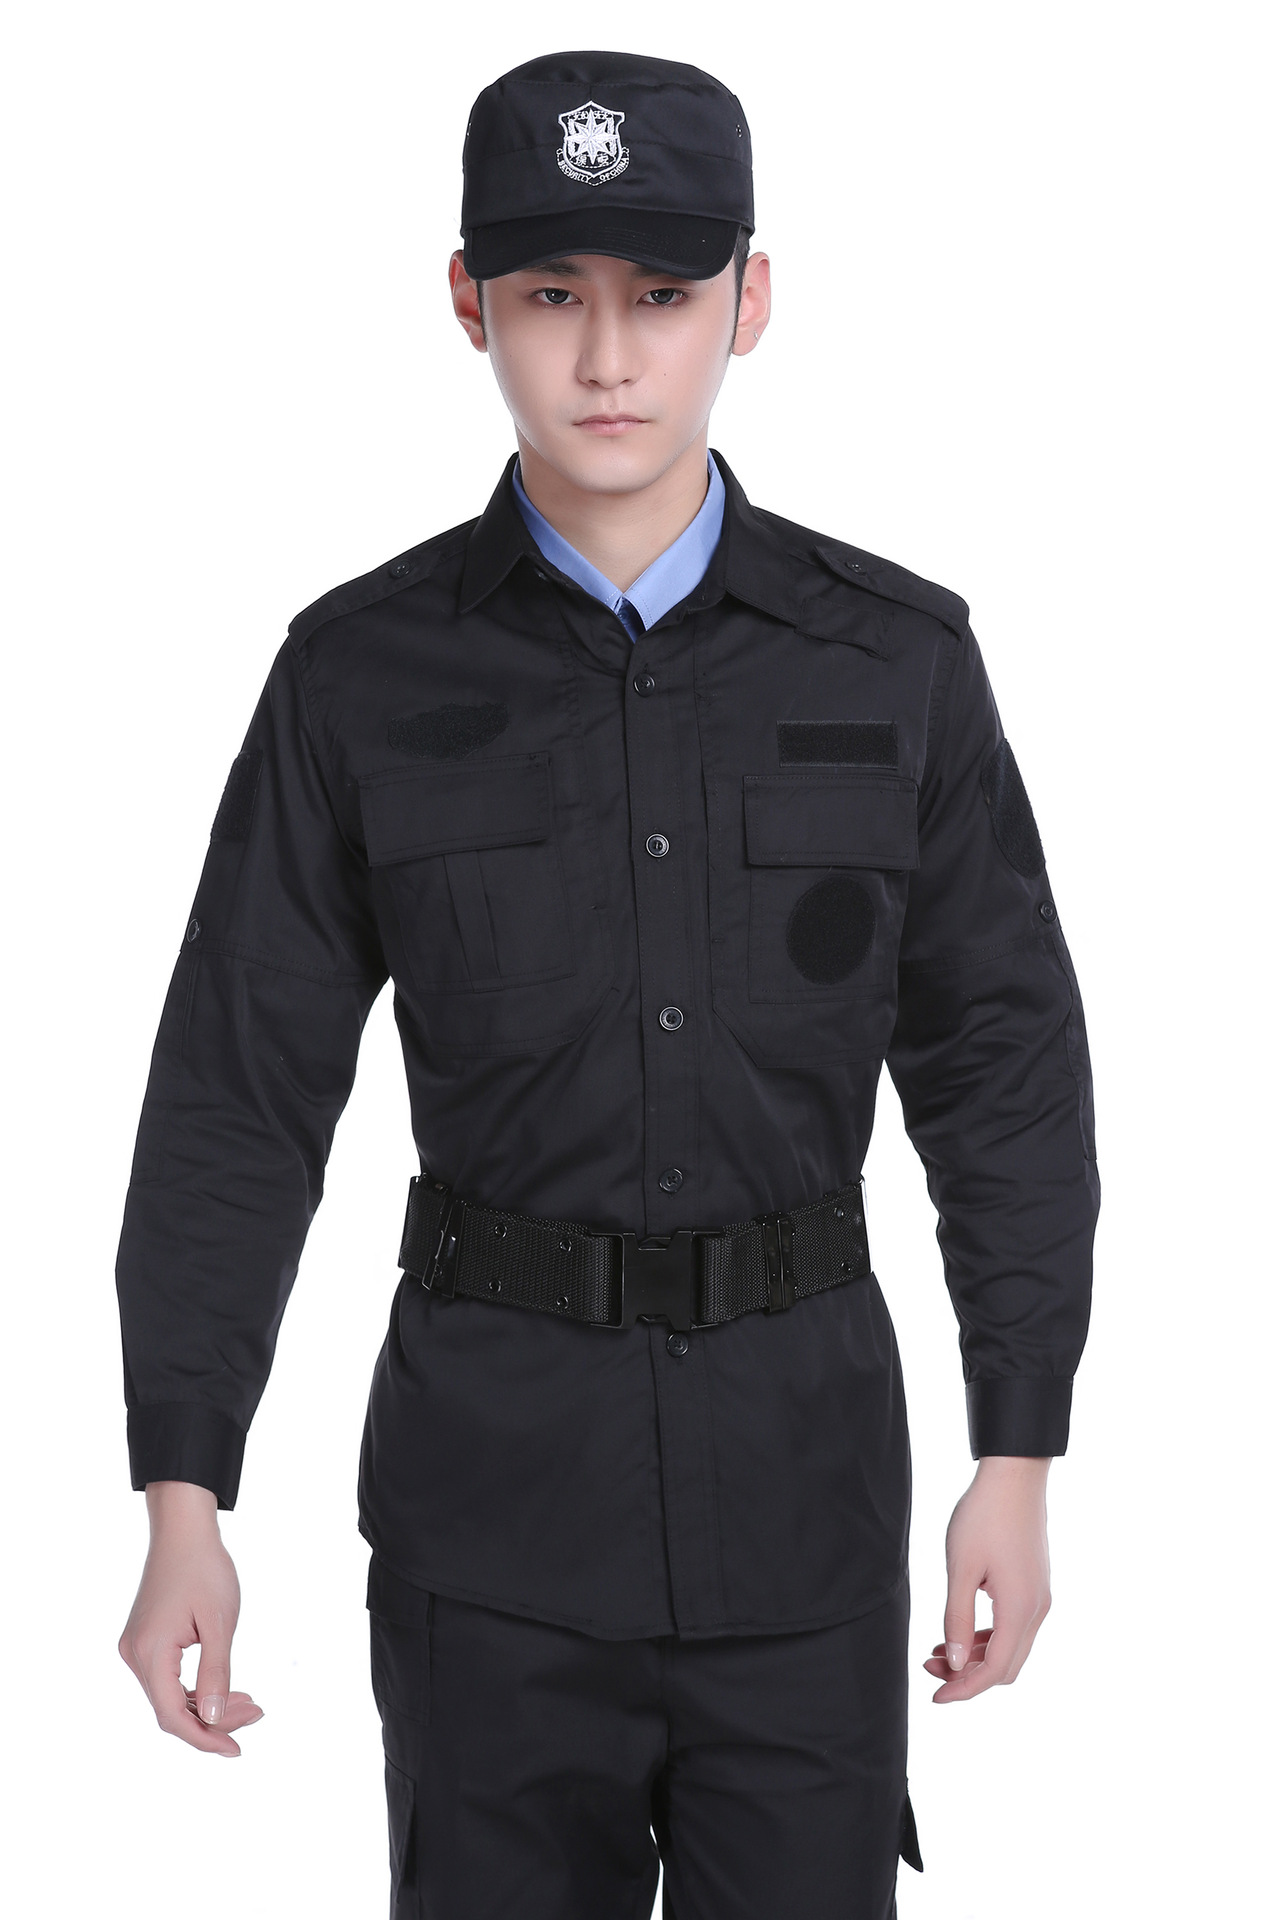 新款保安春秋服 黑色保安套装长袖特训服 保安制服厂家直供